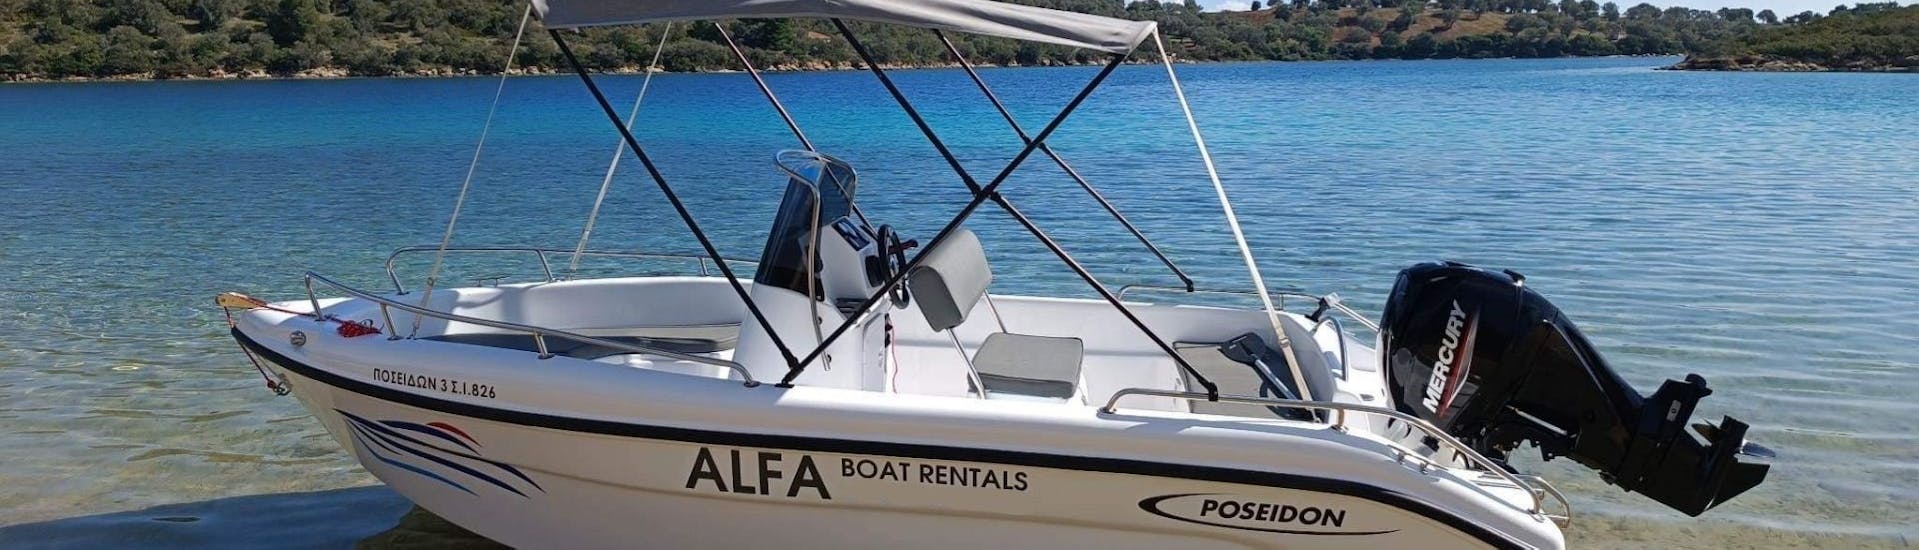 Notre bateau confortable vous attend pour débuter la Location de bateau à Vourvourou (jusqu'à 7 personnes) sans Permis avec Alfa Boat Rental﻿ Vourvourou.